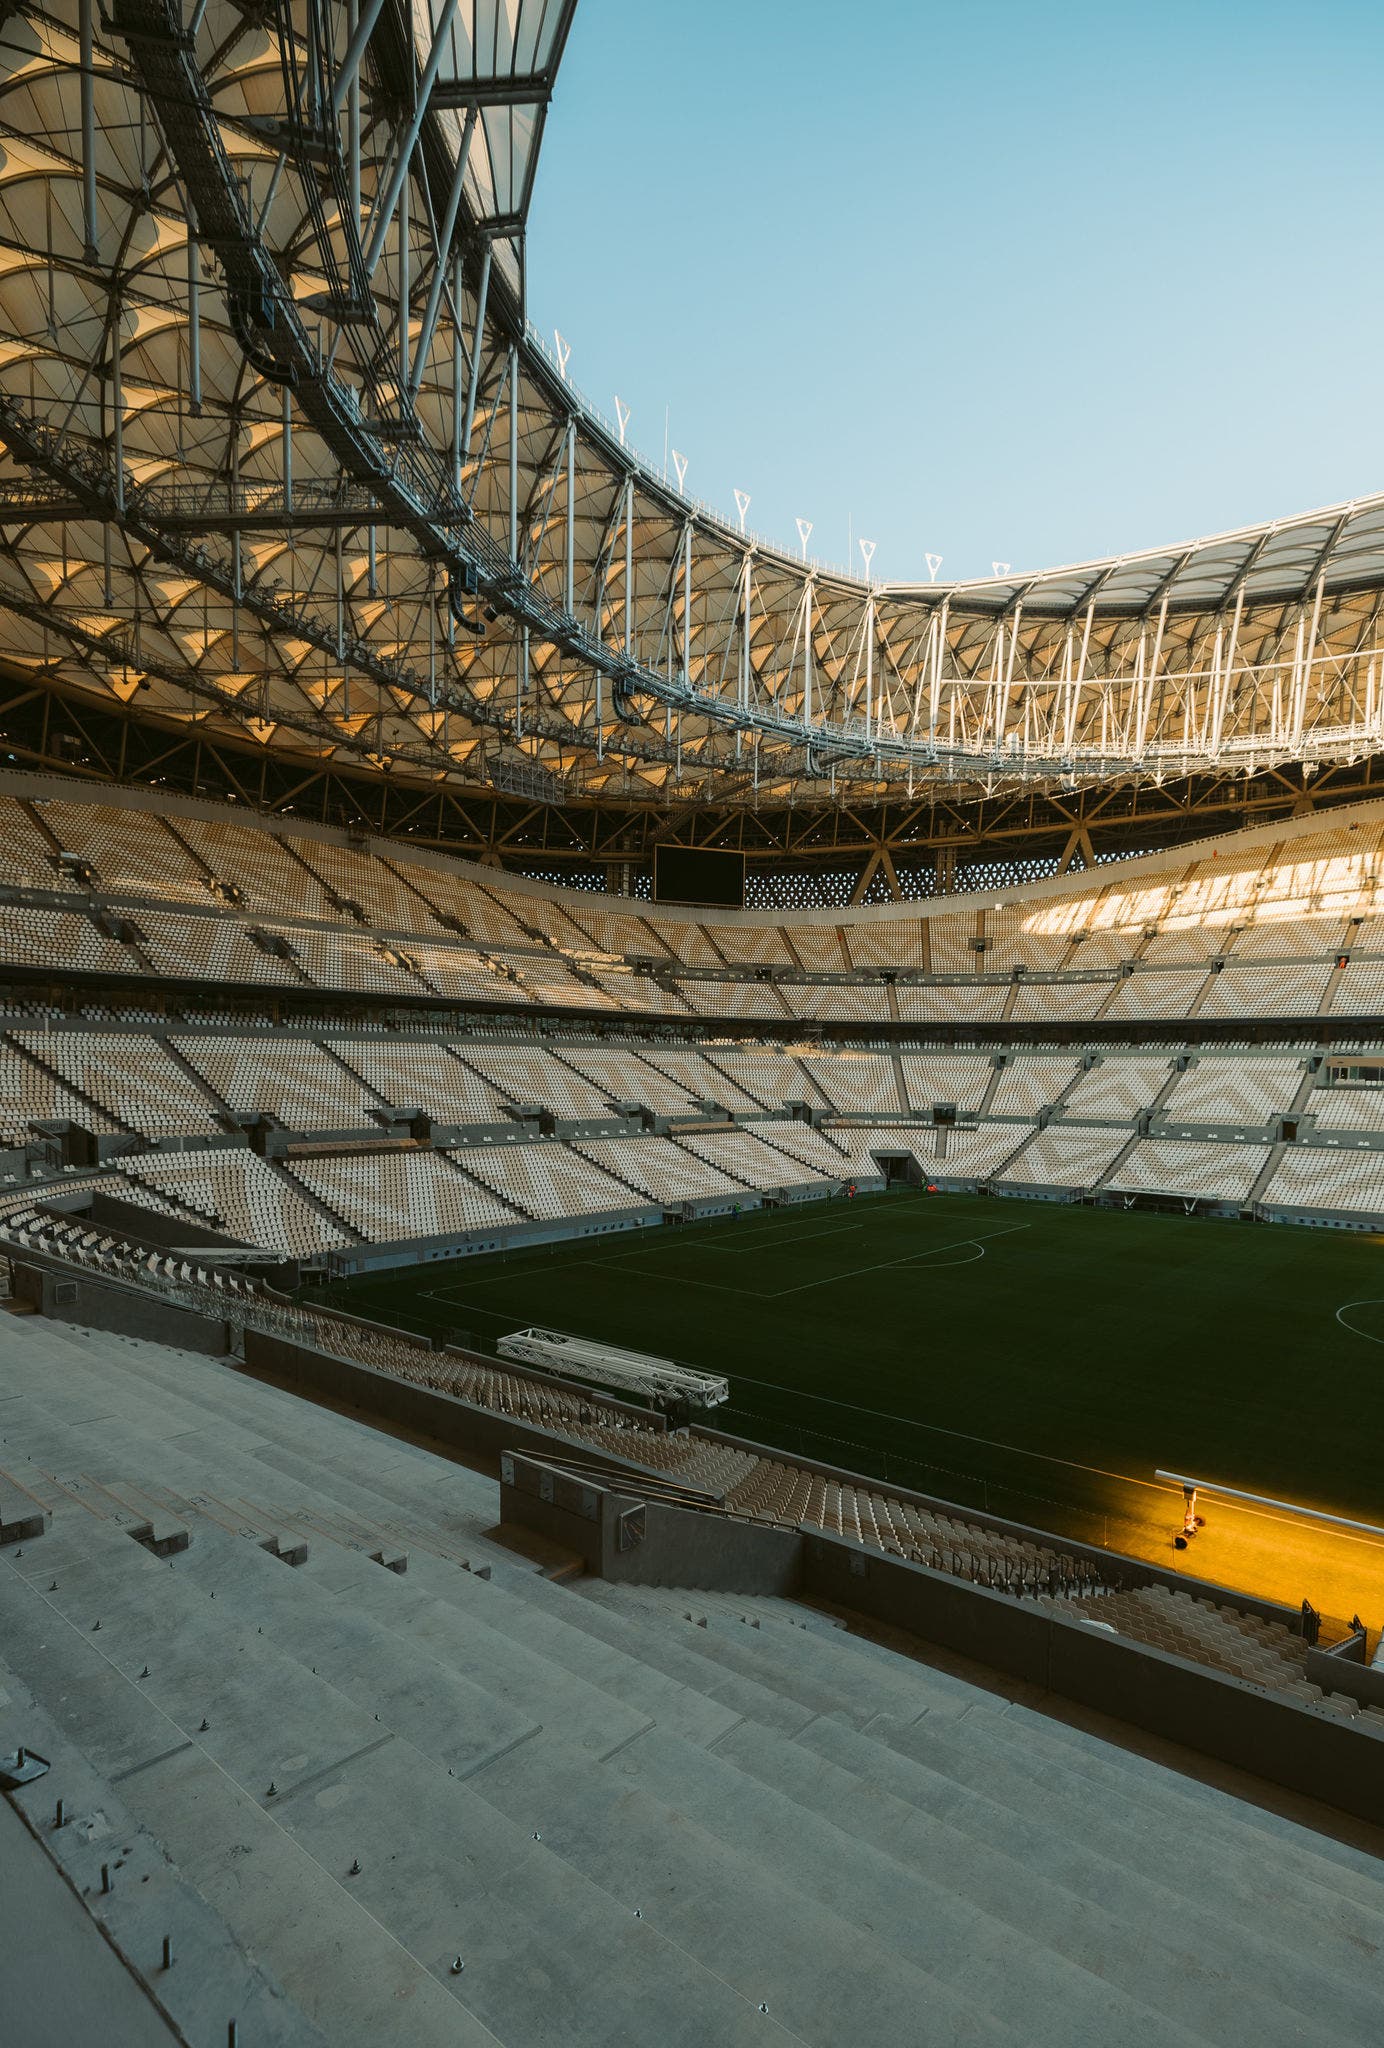 Lusail Stadium | Iconic, inspirational and exquisite